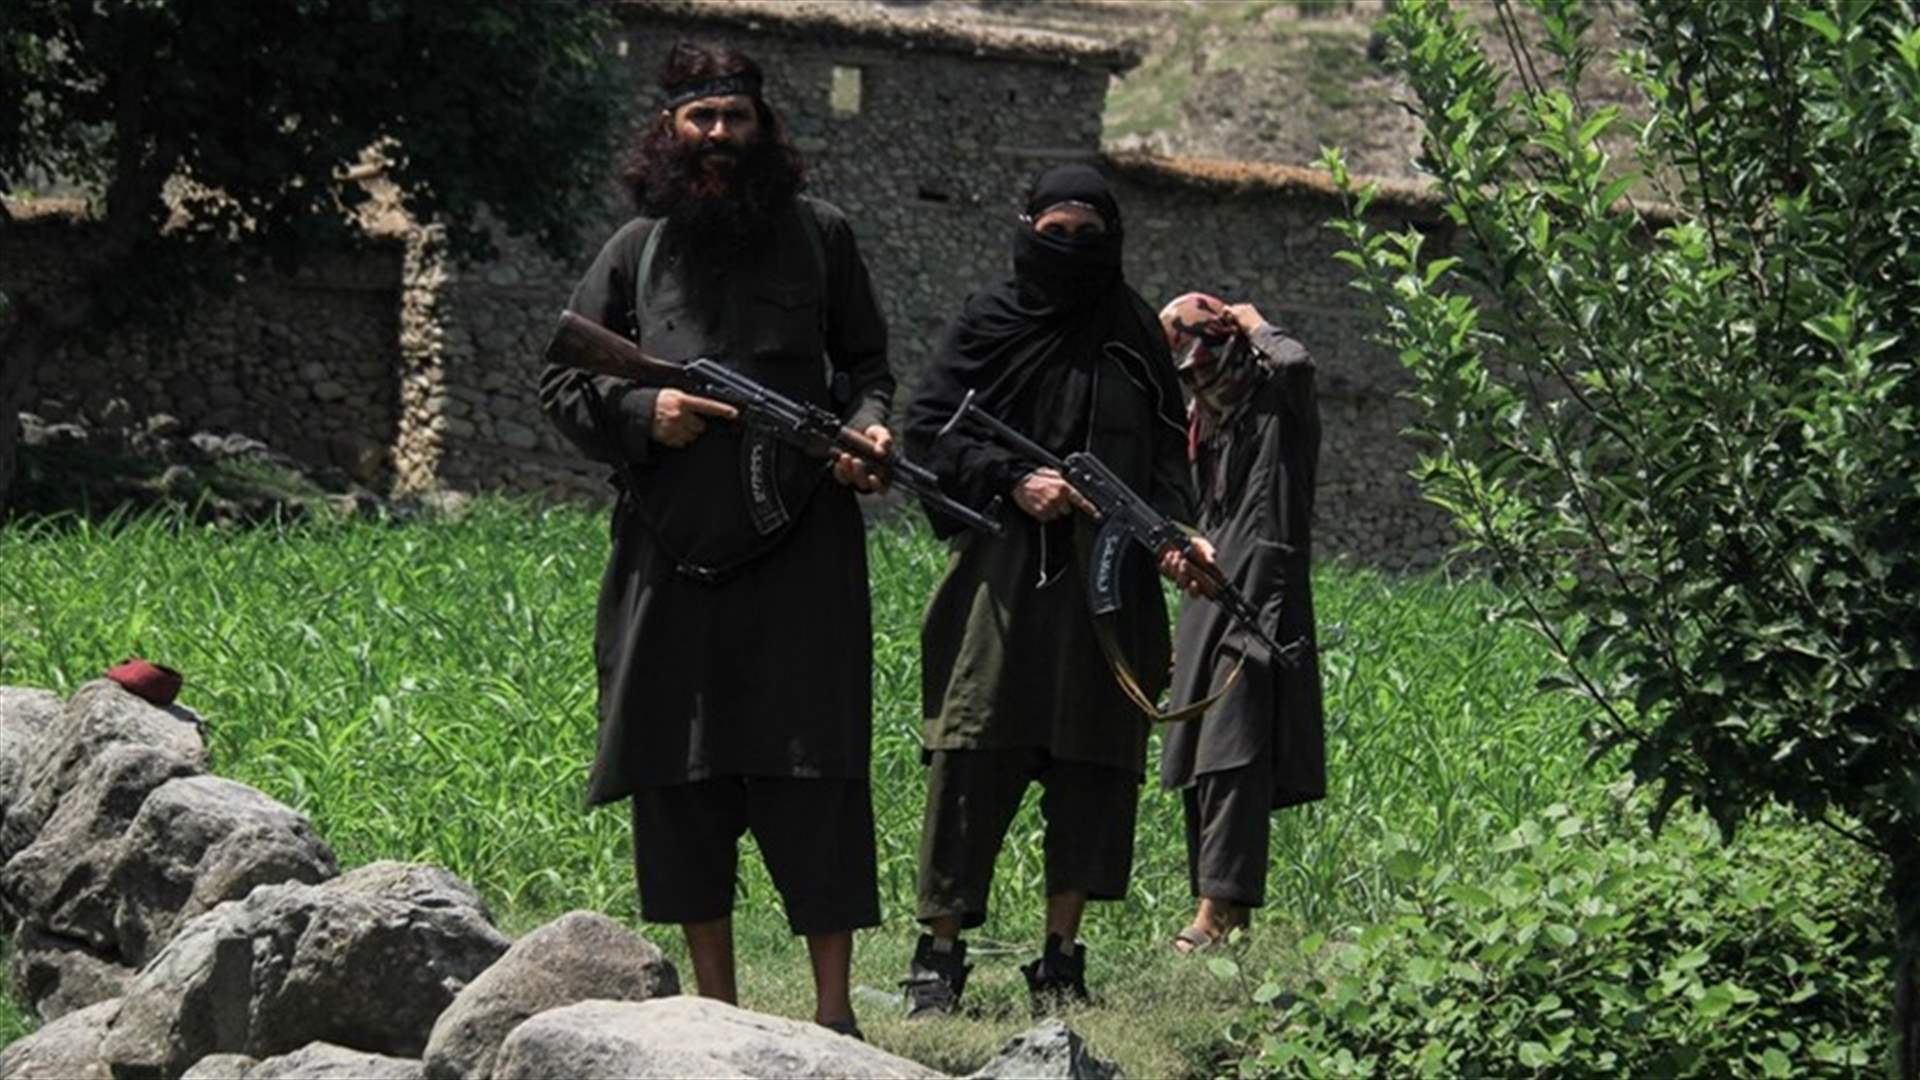 Civilian casualties increase as Afghan troops battle Taliban - U.N.